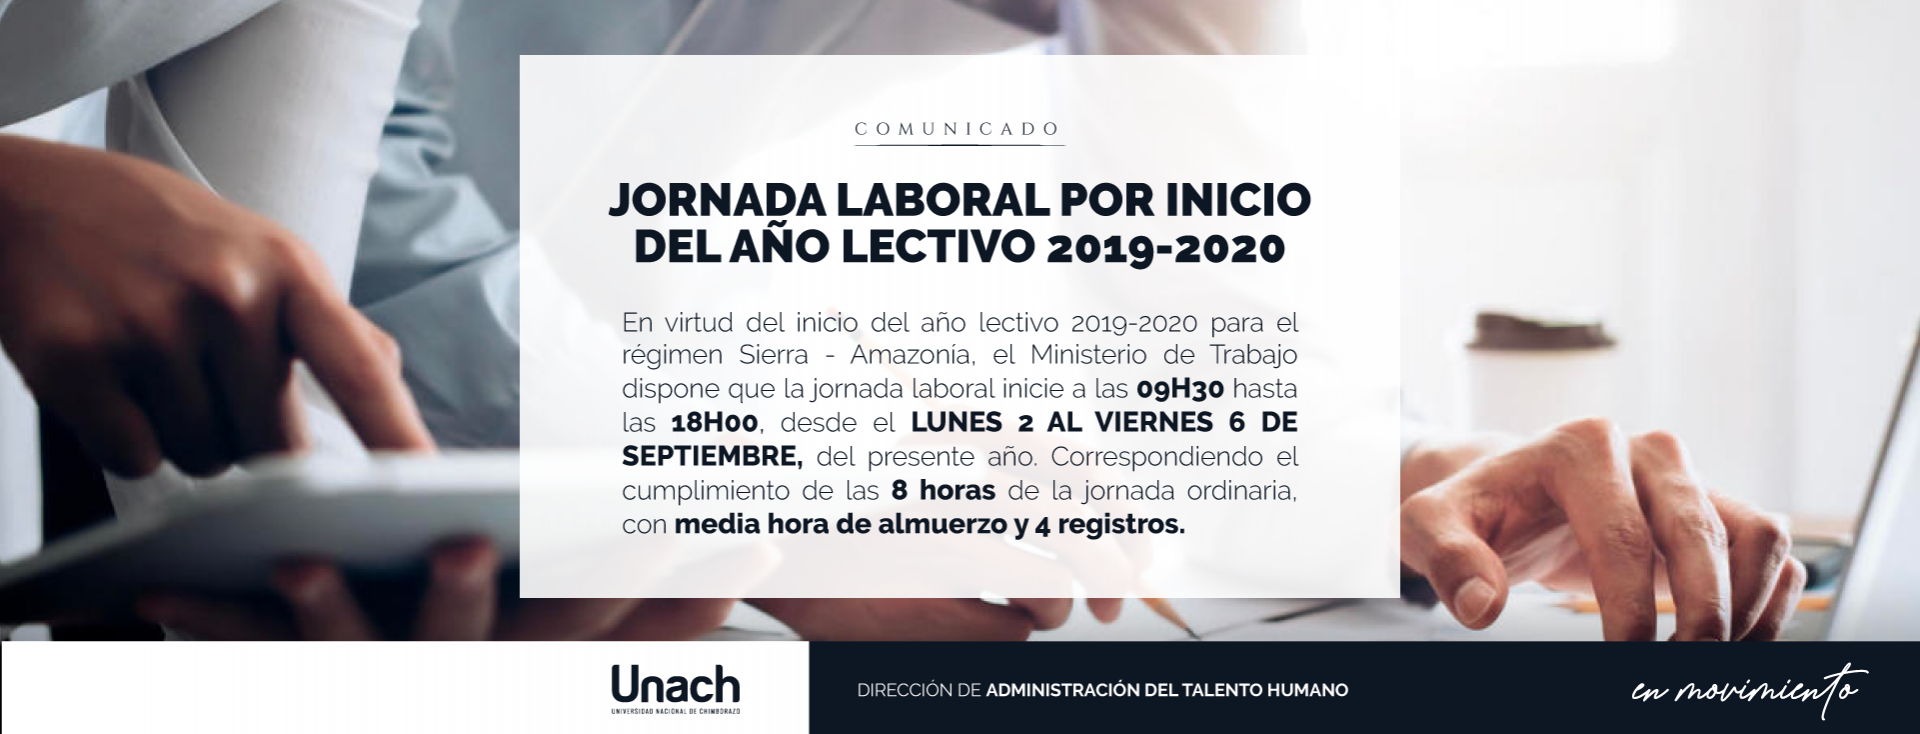 JORNADA LABORAL POR INICIO DEL AÑO LECTIVO 2019 - 2020